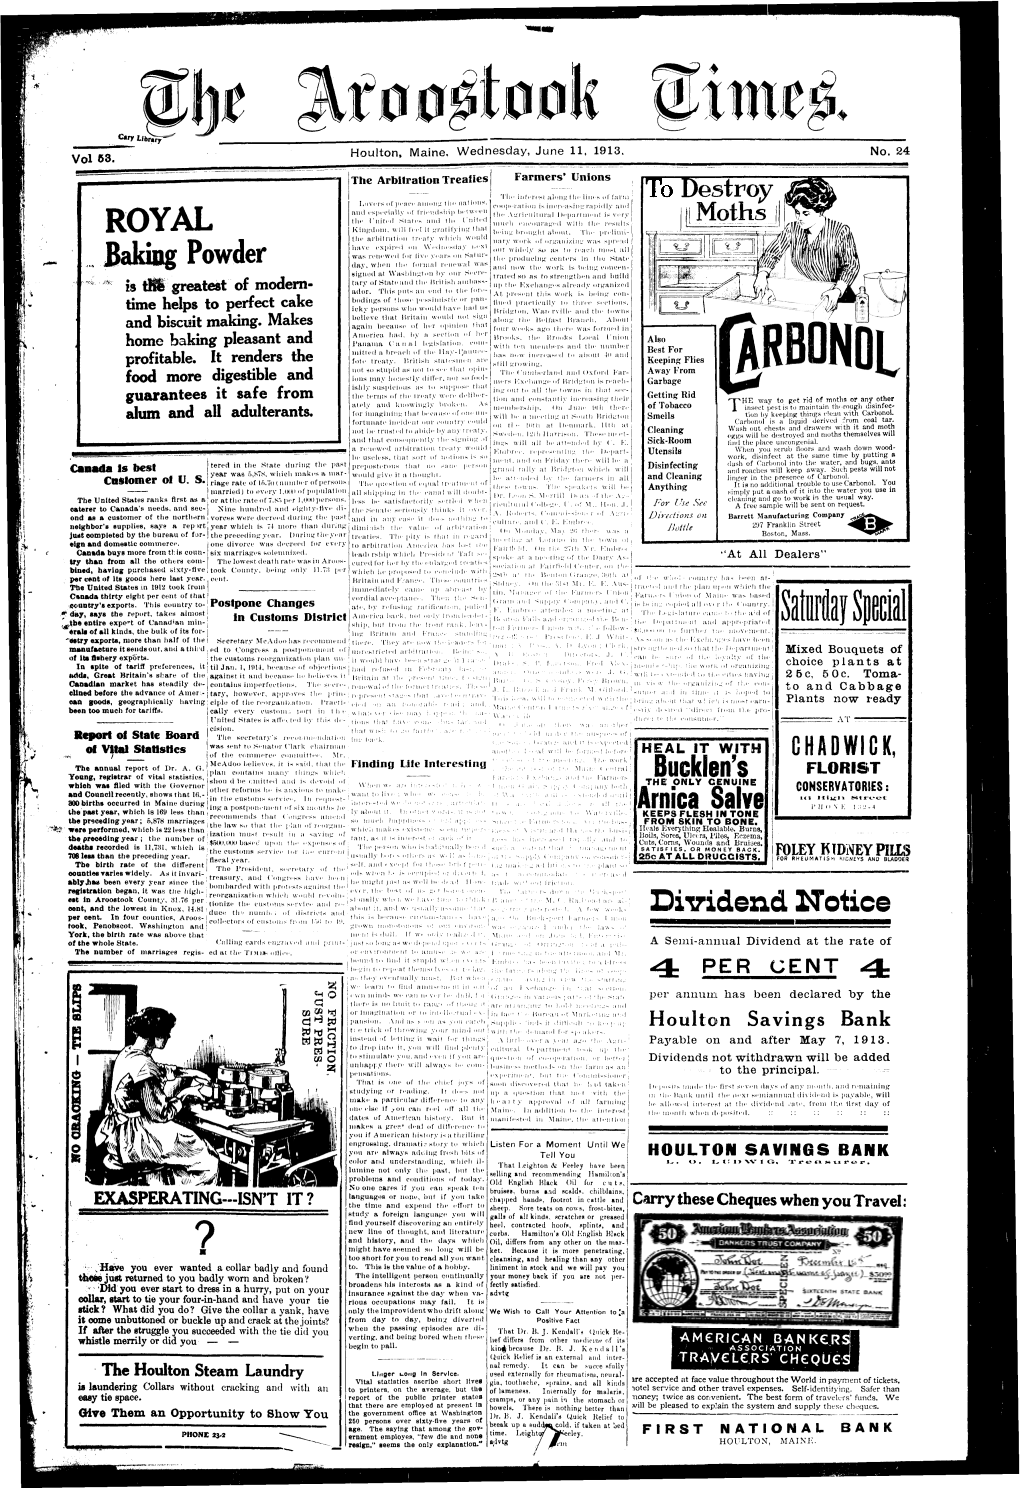 The Aroostook Times, June 11, 1913